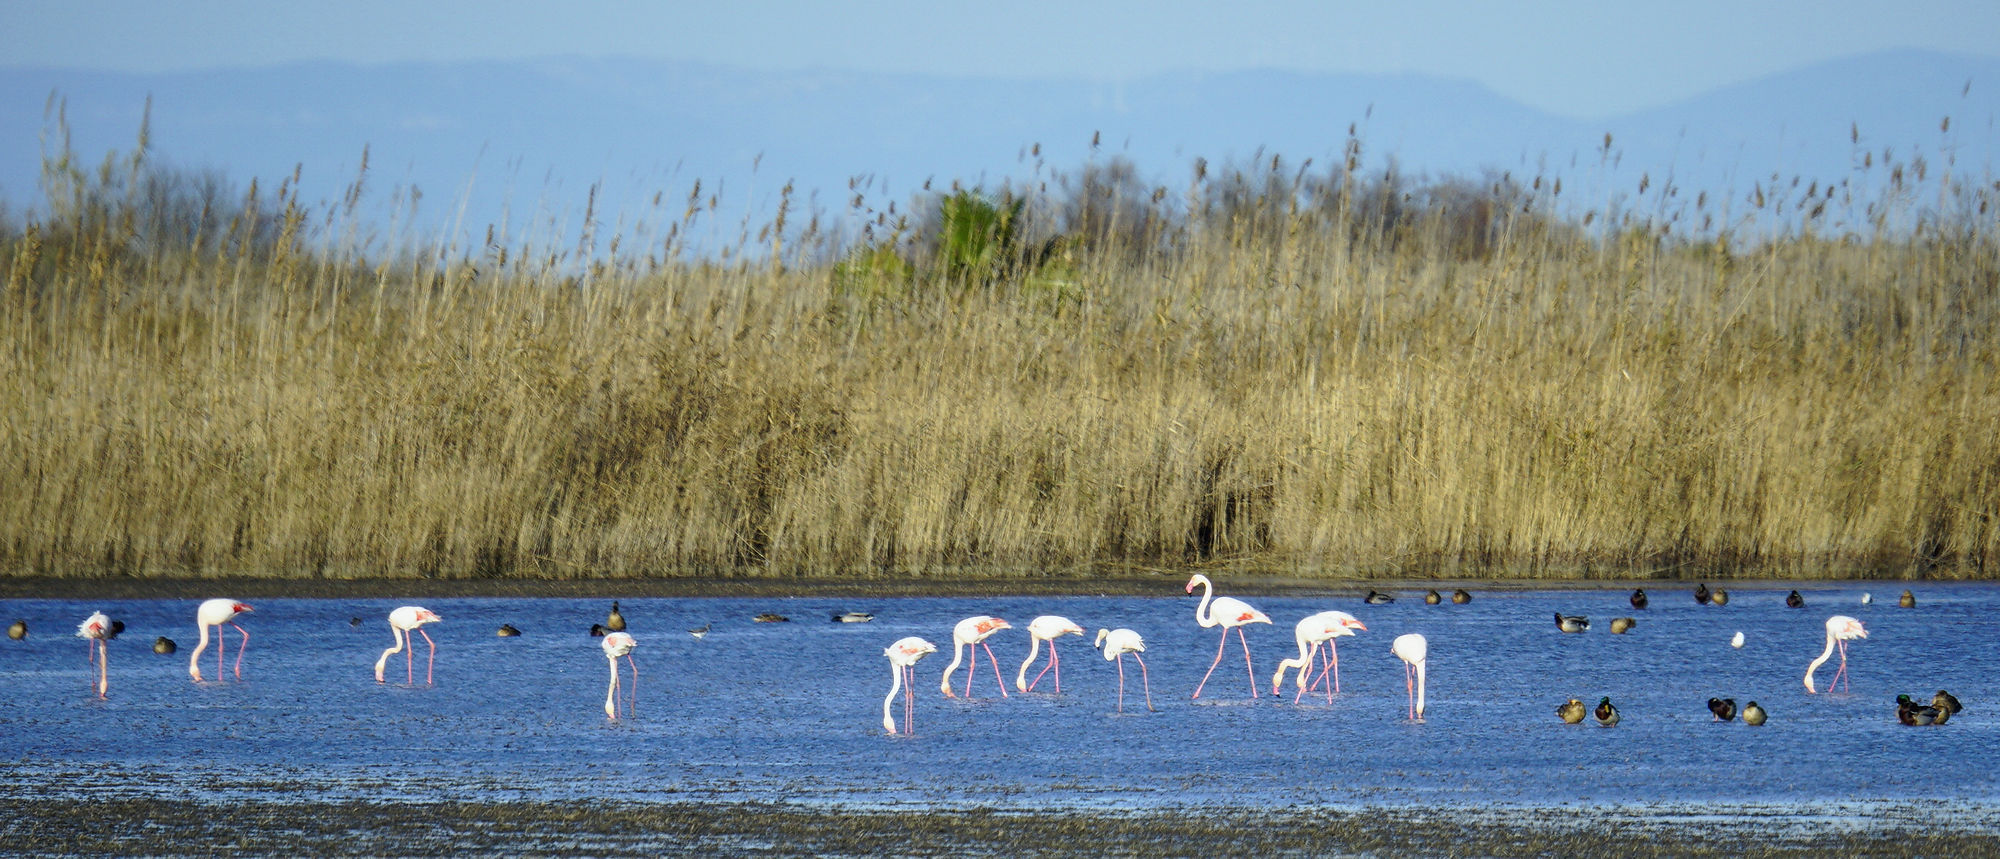 * Parc Natural del Delta de L'Ebre ~ Flamingos, Schnabel im Wasser *